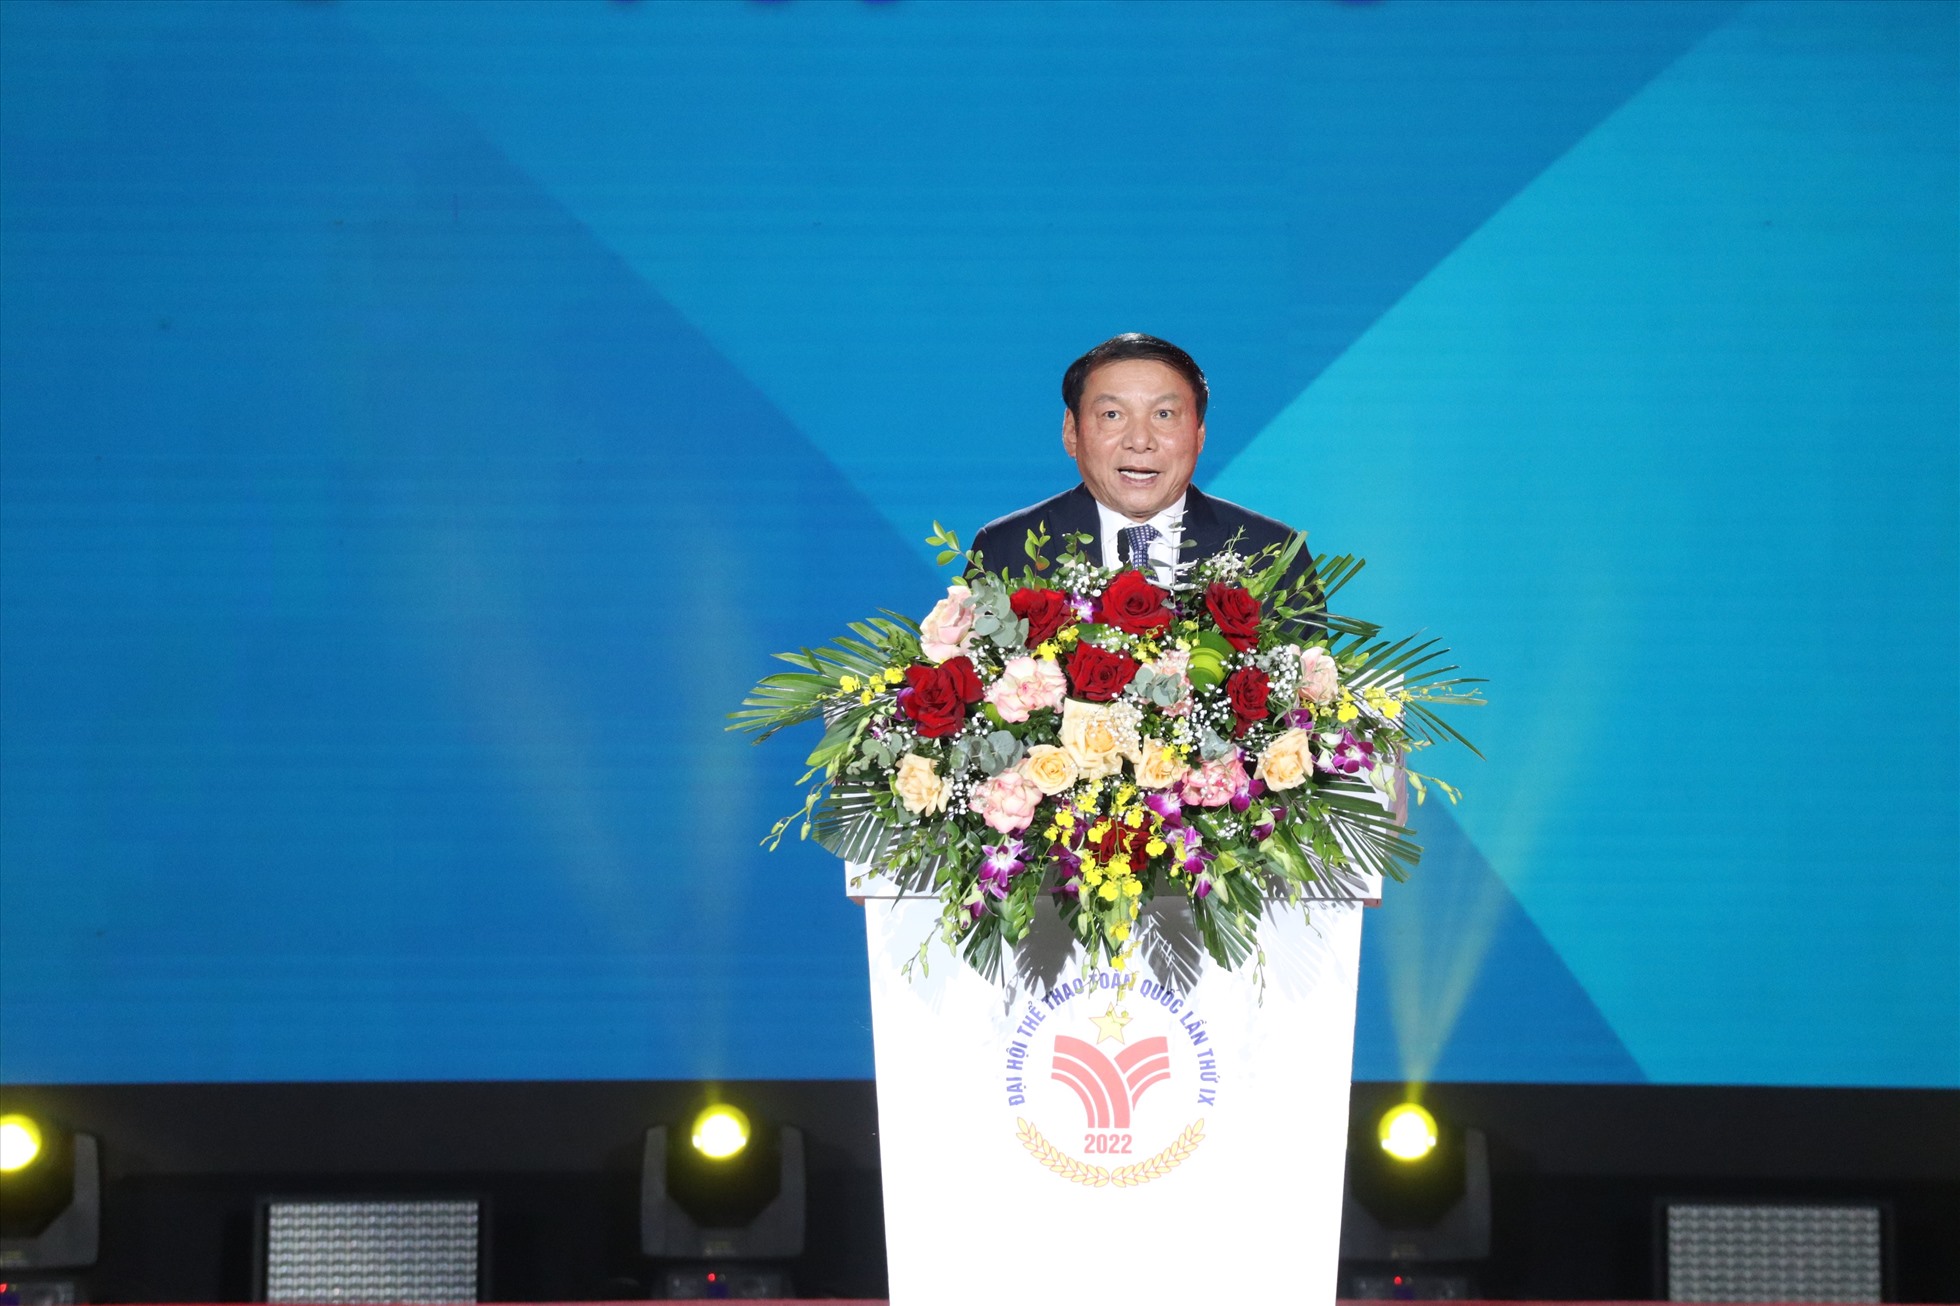 Bộ trưởng Bộ Văn hoá, Thể thao và Du lịch Nguyễn Văn Hùng khẳng định sự thành công của kỳ Đại hội này. Ảnh: Bùi Lượng